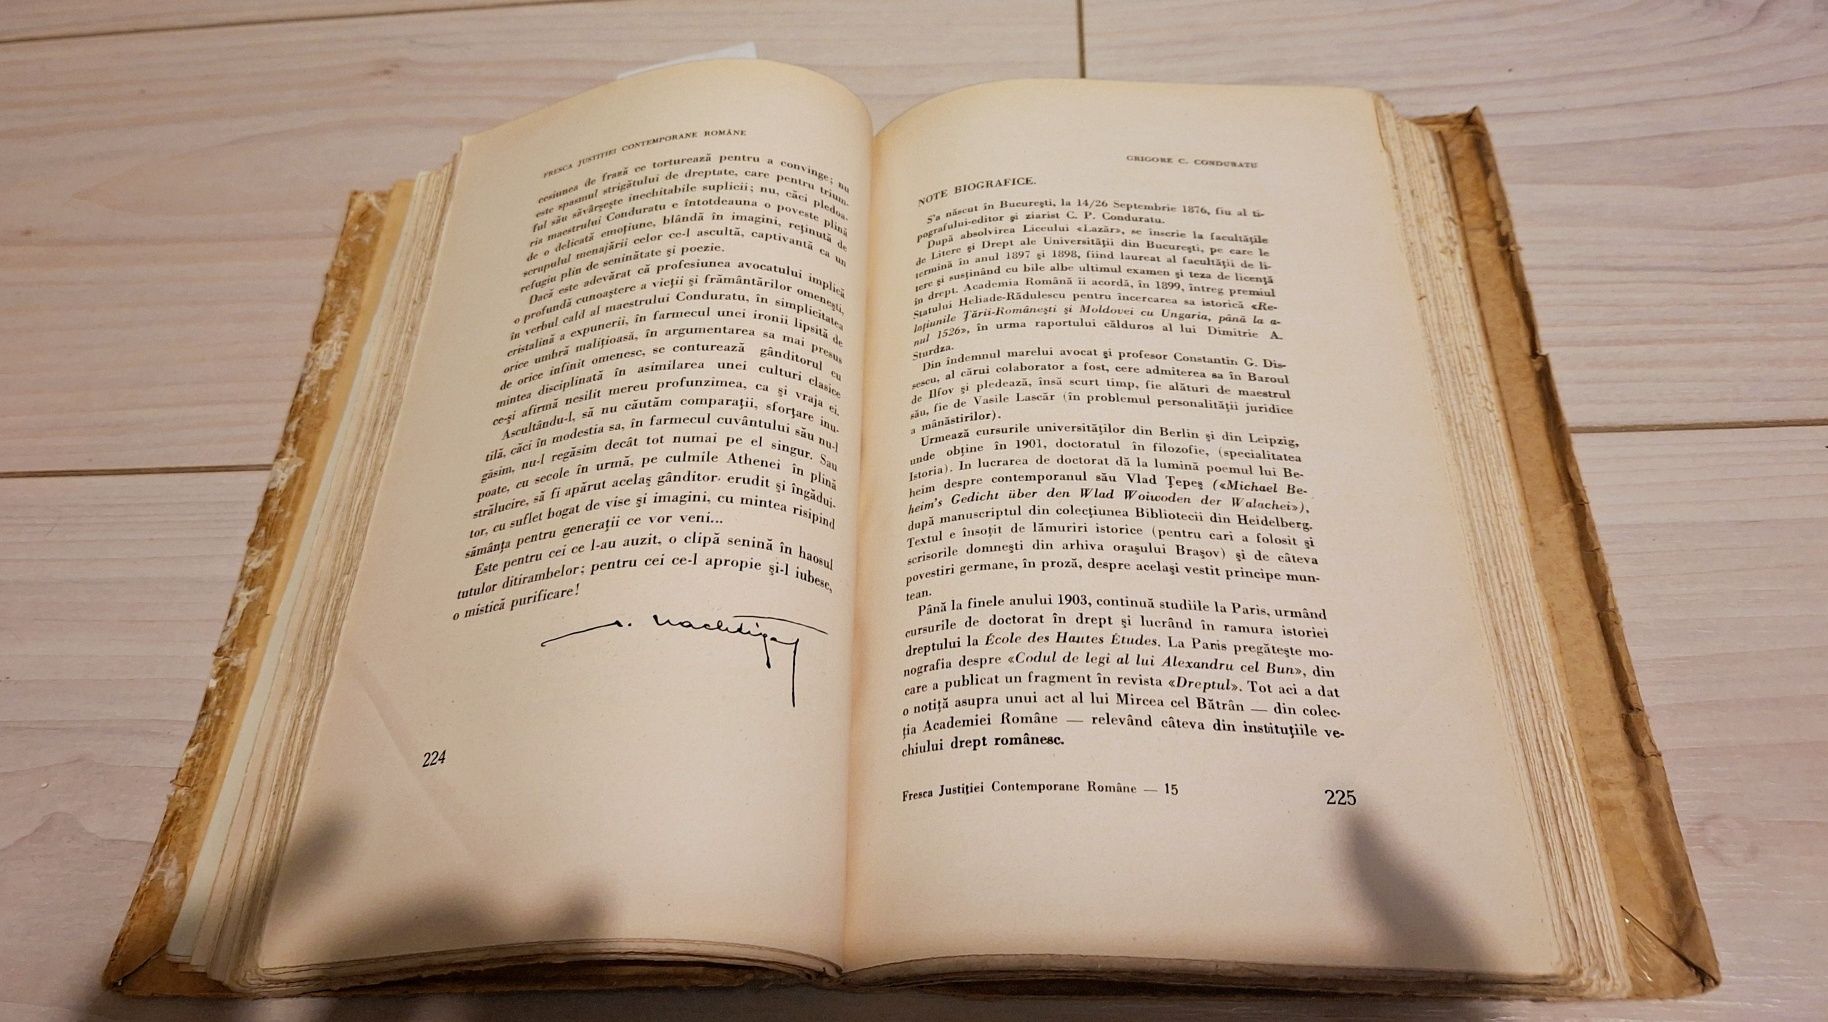 Fresca justitiei contemporane romane-Stanetti editie 1935